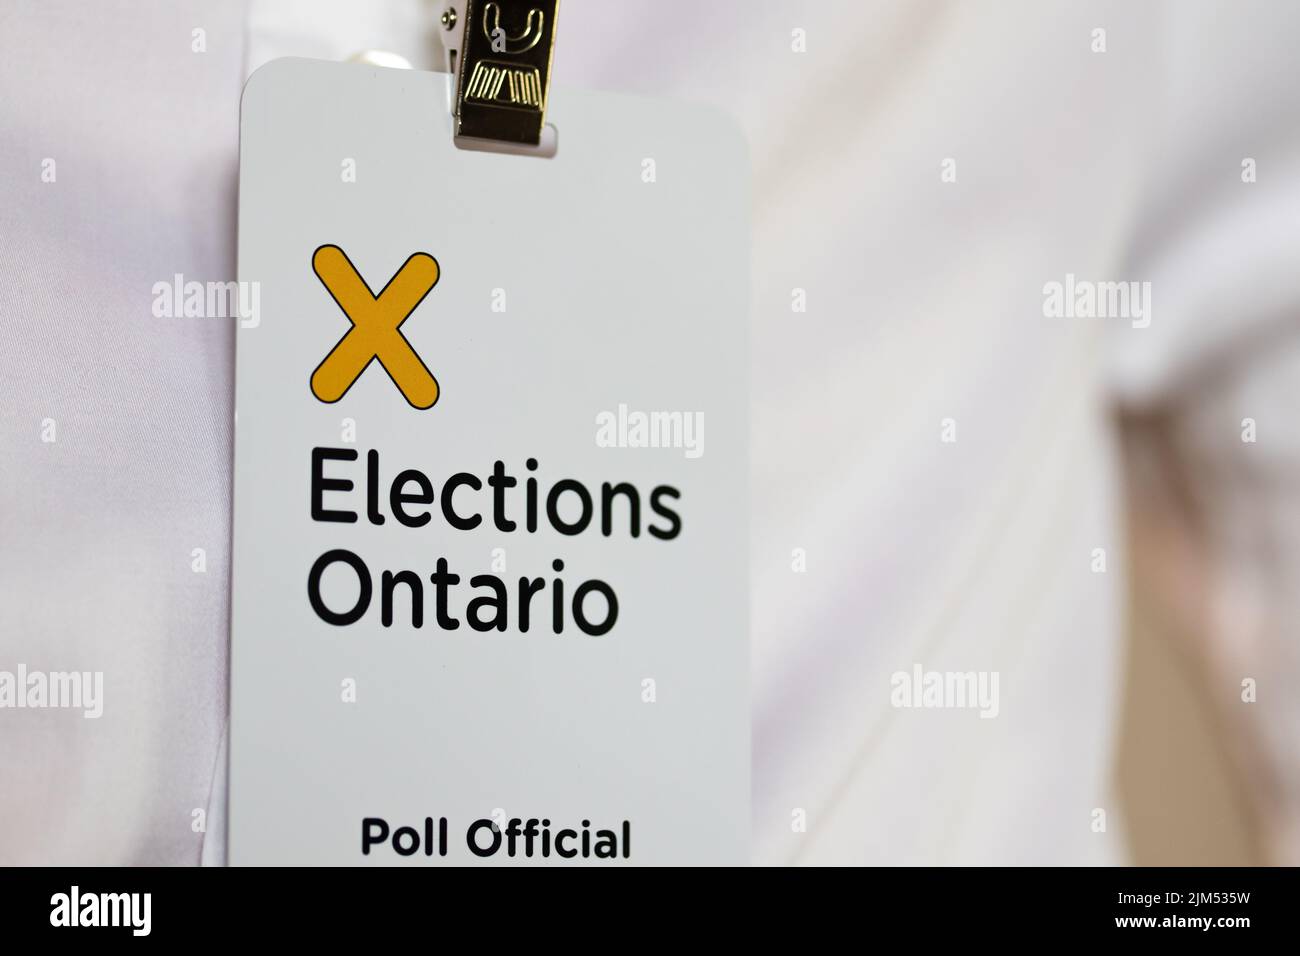 El logo de Elecciones Ontario se ve en primer plano en la insignia de un Oficial de la Encuesta que trabaja para Elecciones Ontario. Foto de stock